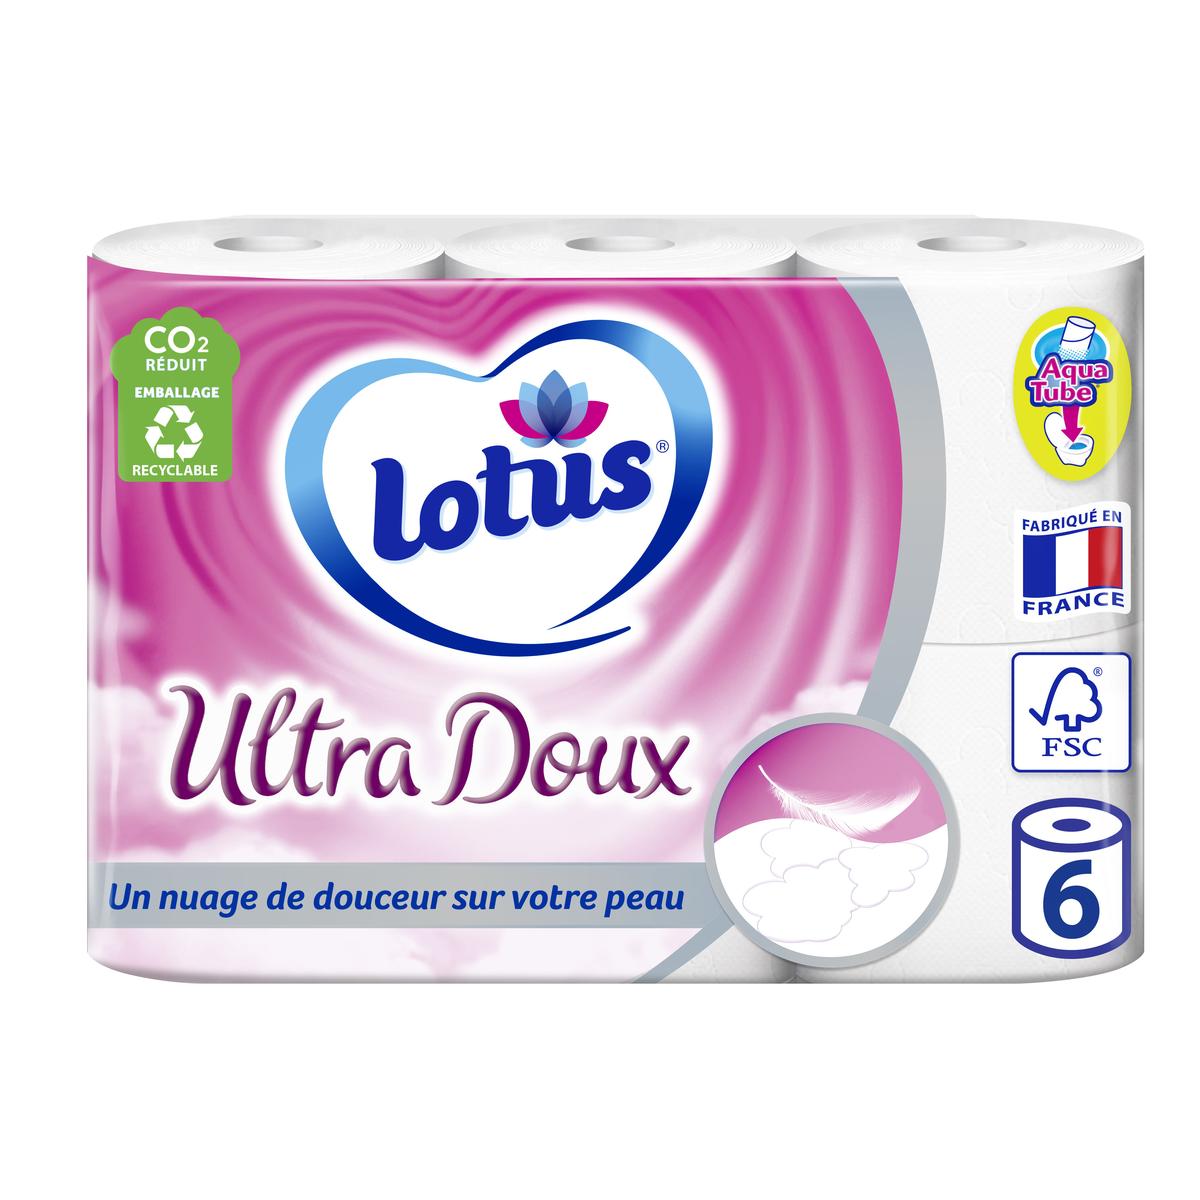 Questions sur le papier toilette humide Lotus - Lotus